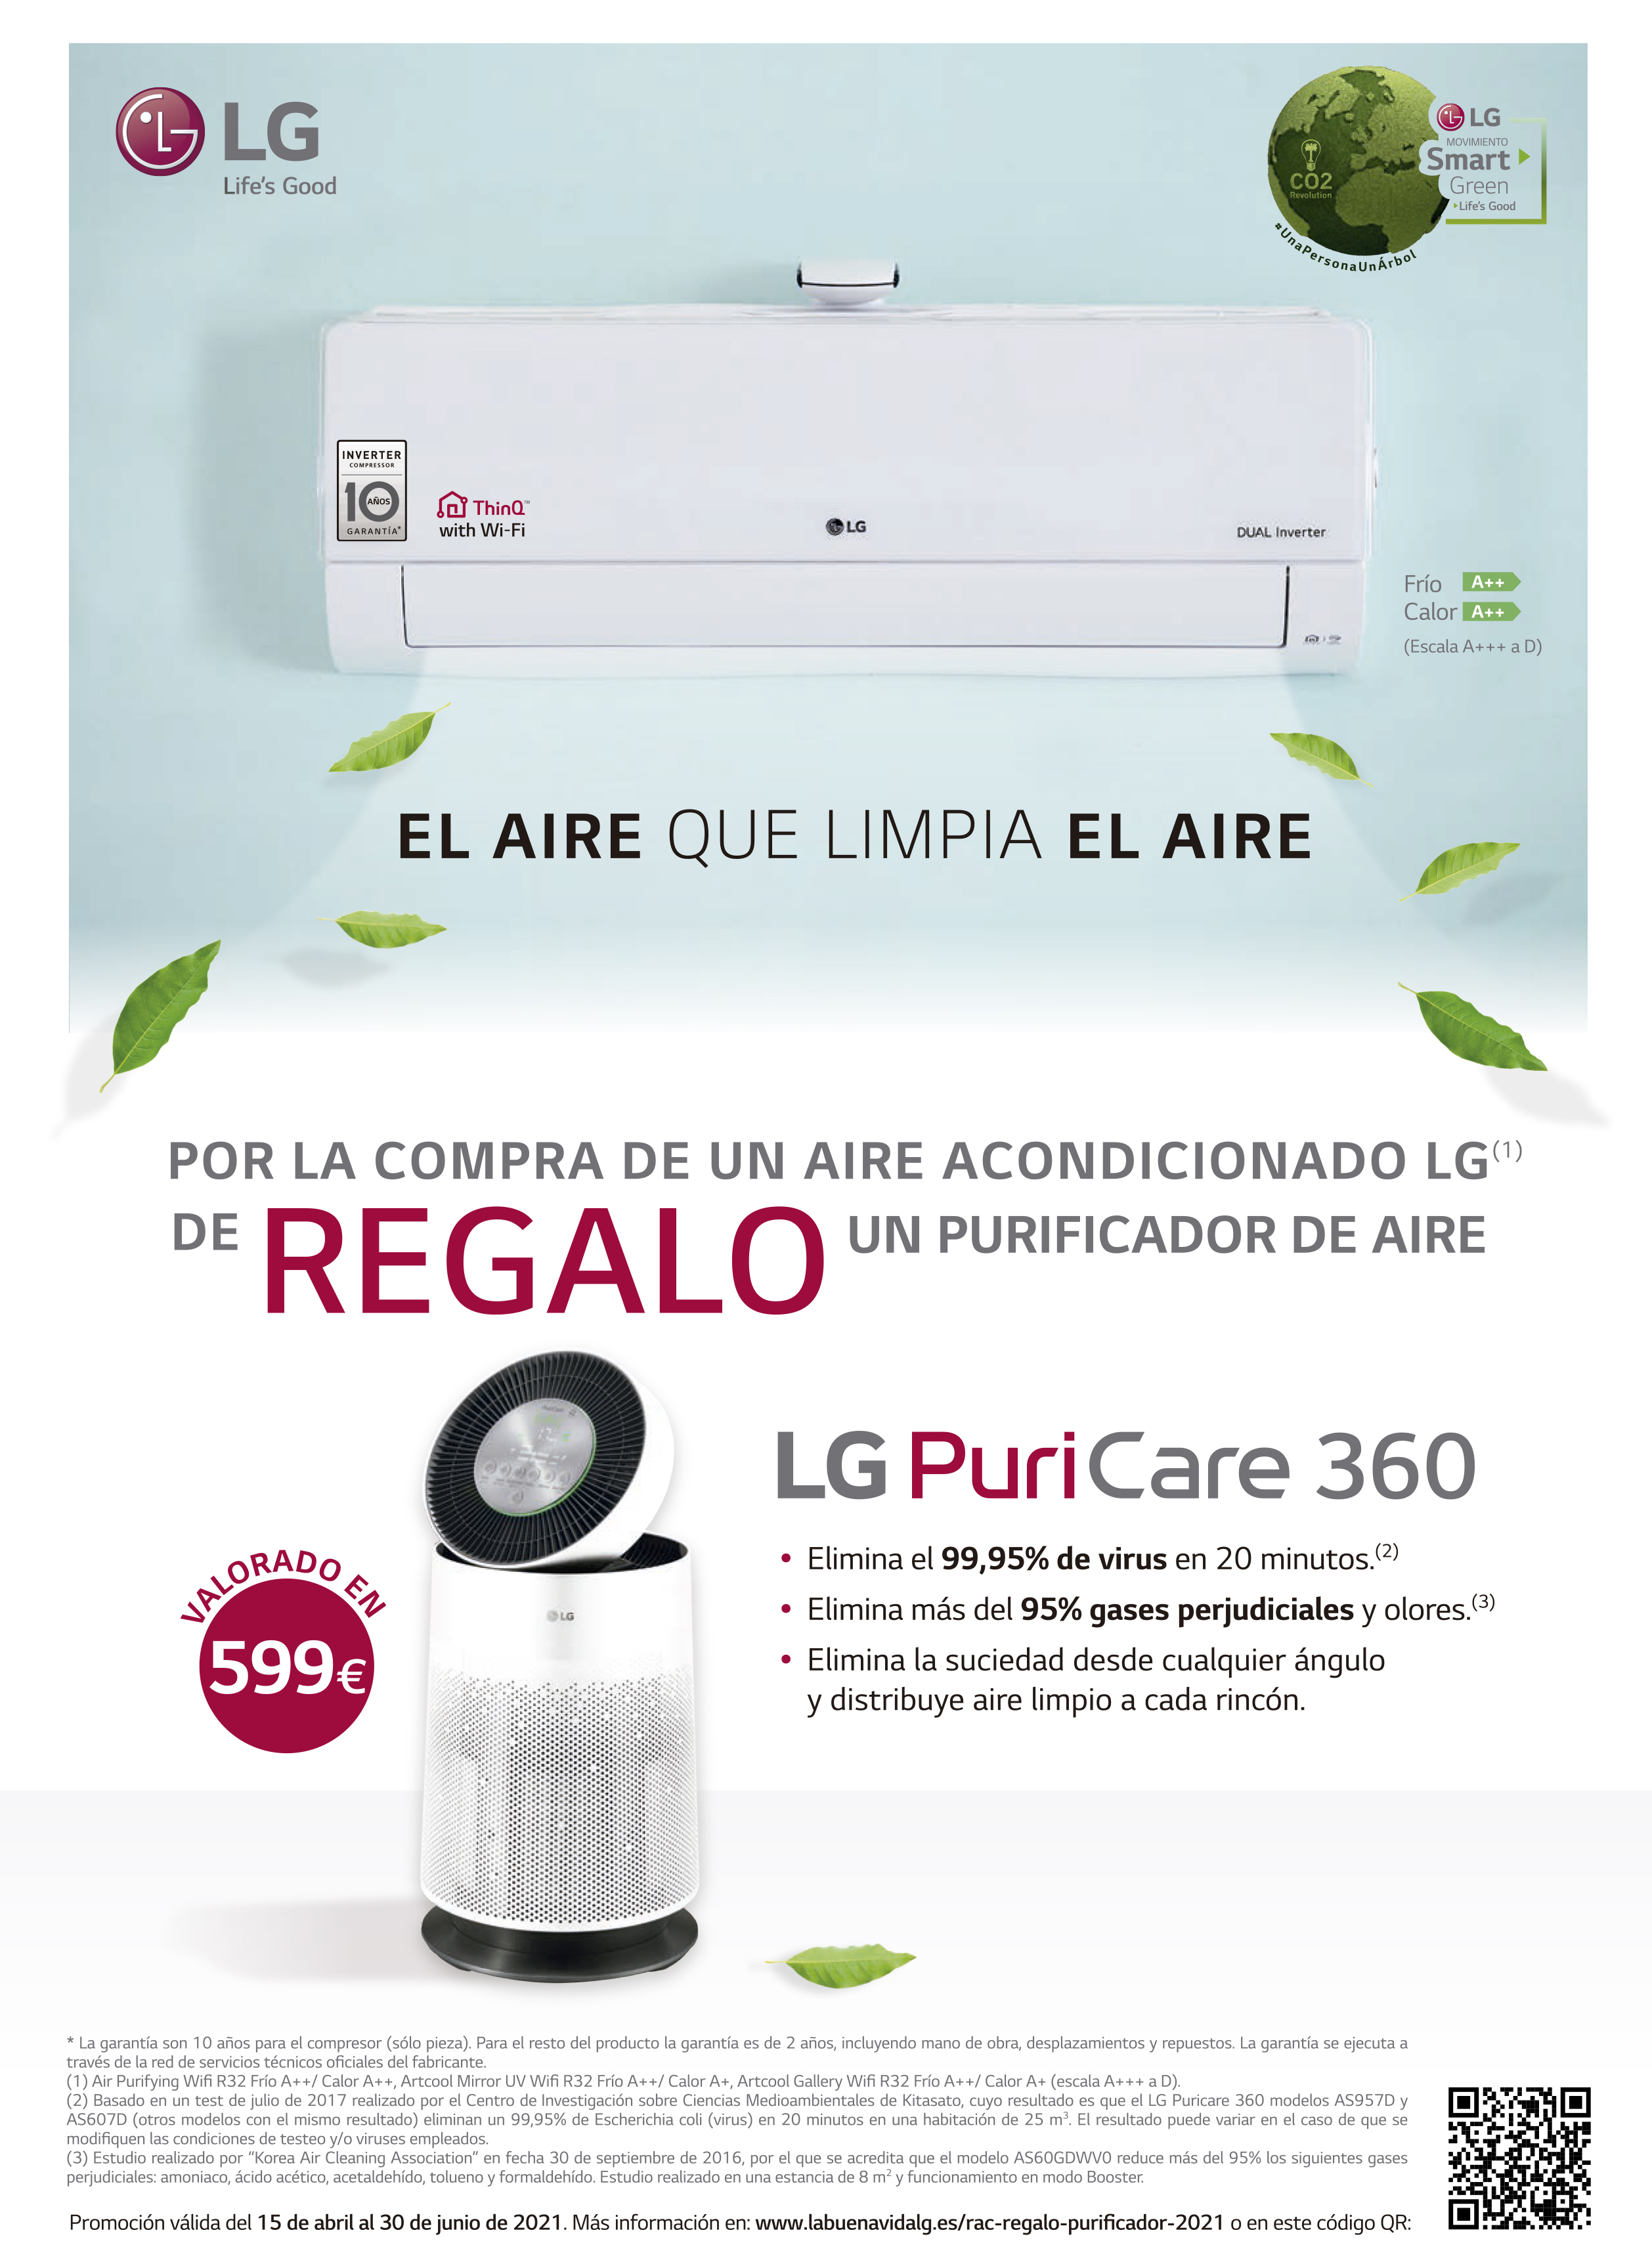 Compra un aire acondicionado LG y llévate un purificador de aire LG Puricare 360 de regalo